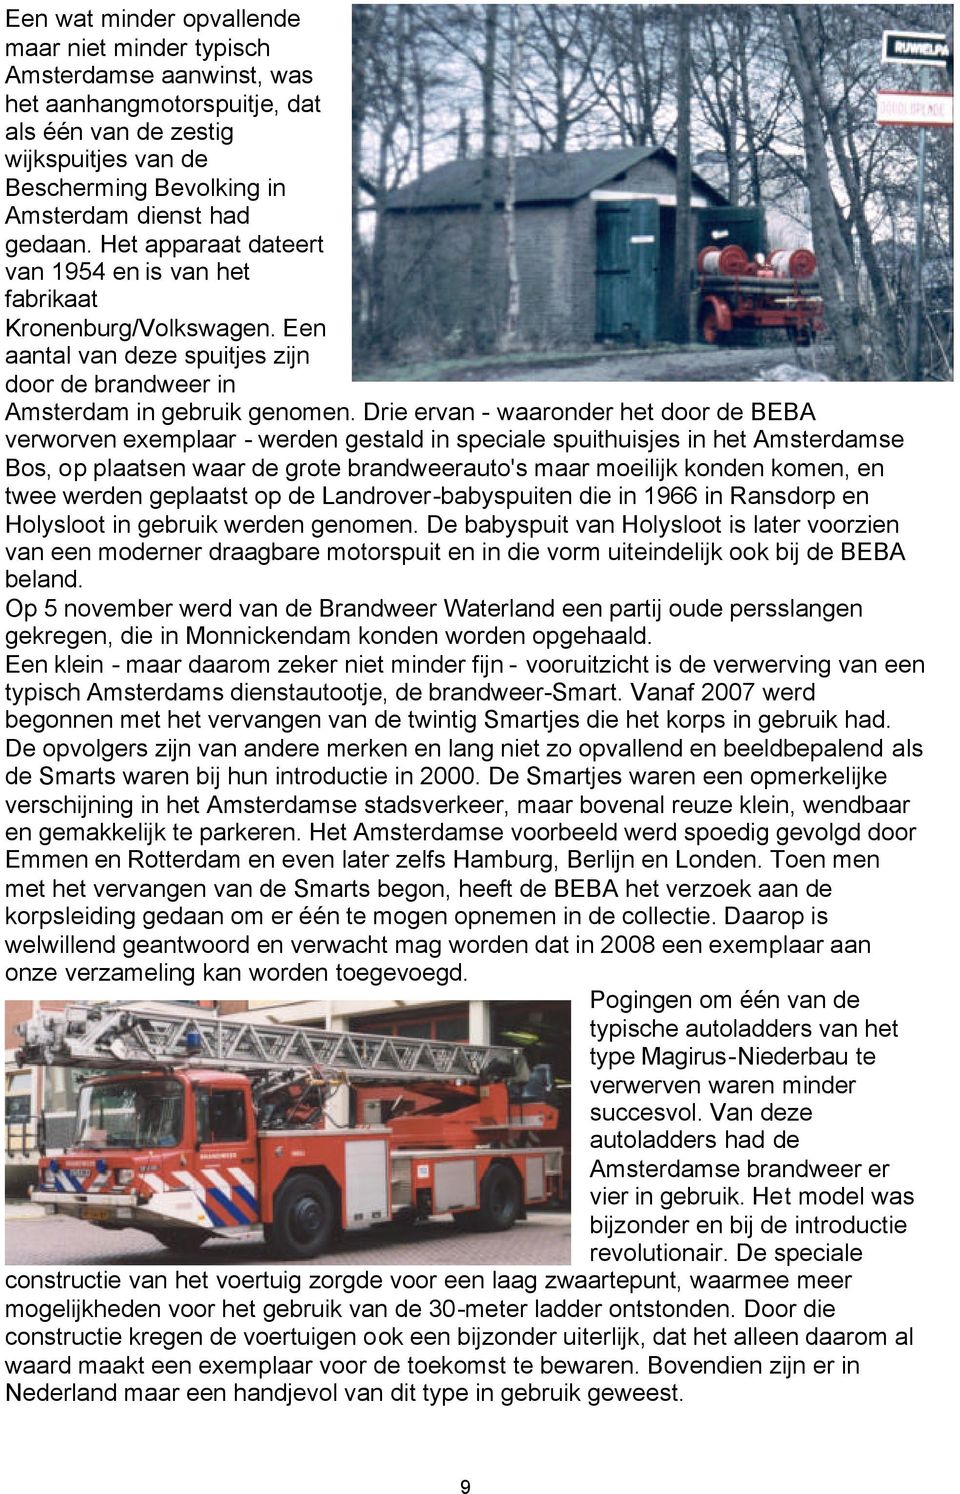 Drie ervan - waaronder het door de BEBA verworven exemplaar - werden gestald in speciale spuithuisjes in het Amsterdamse Bos, op plaatsen waar de grote brandweerauto's maar moeilijk konden komen, en